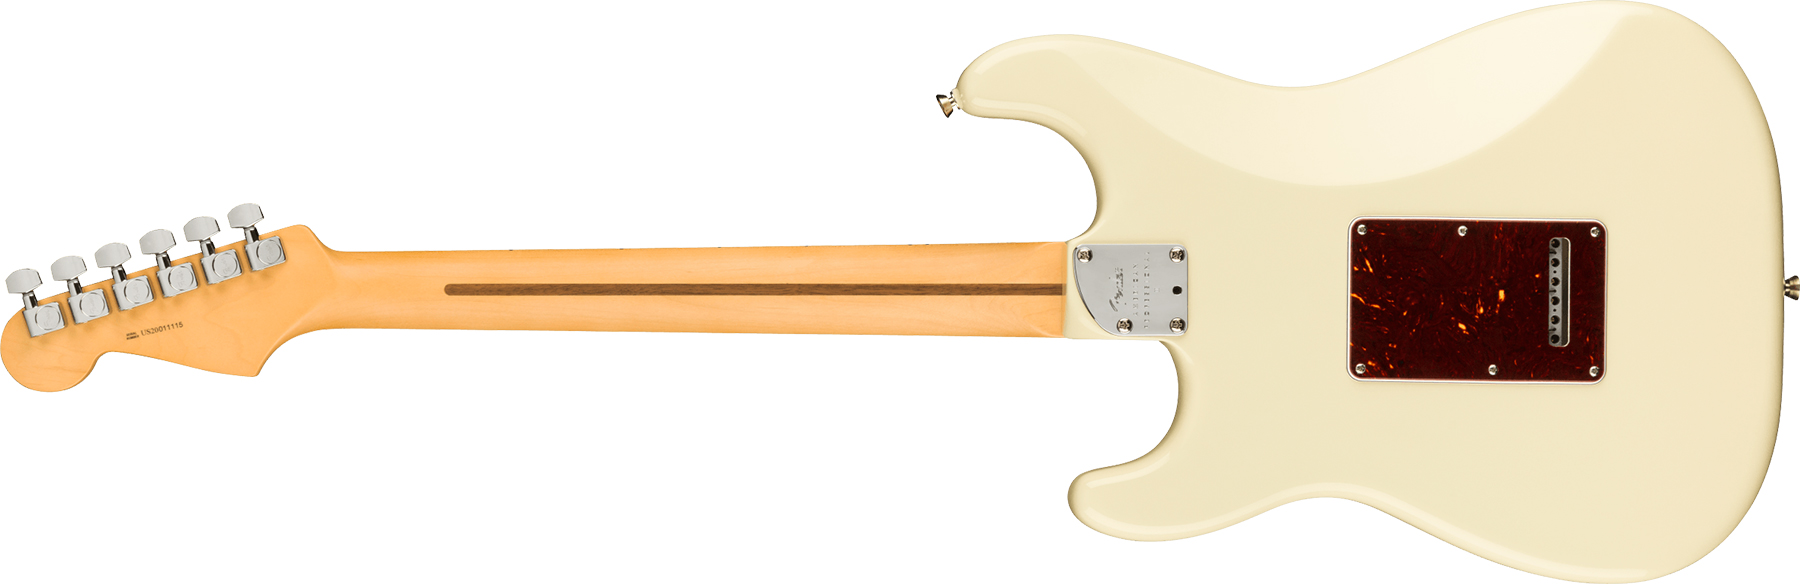 Fender Strat American Professional Ii Usa Mn - Olympic White - Elektrische gitaar in Str-vorm - Variation 1